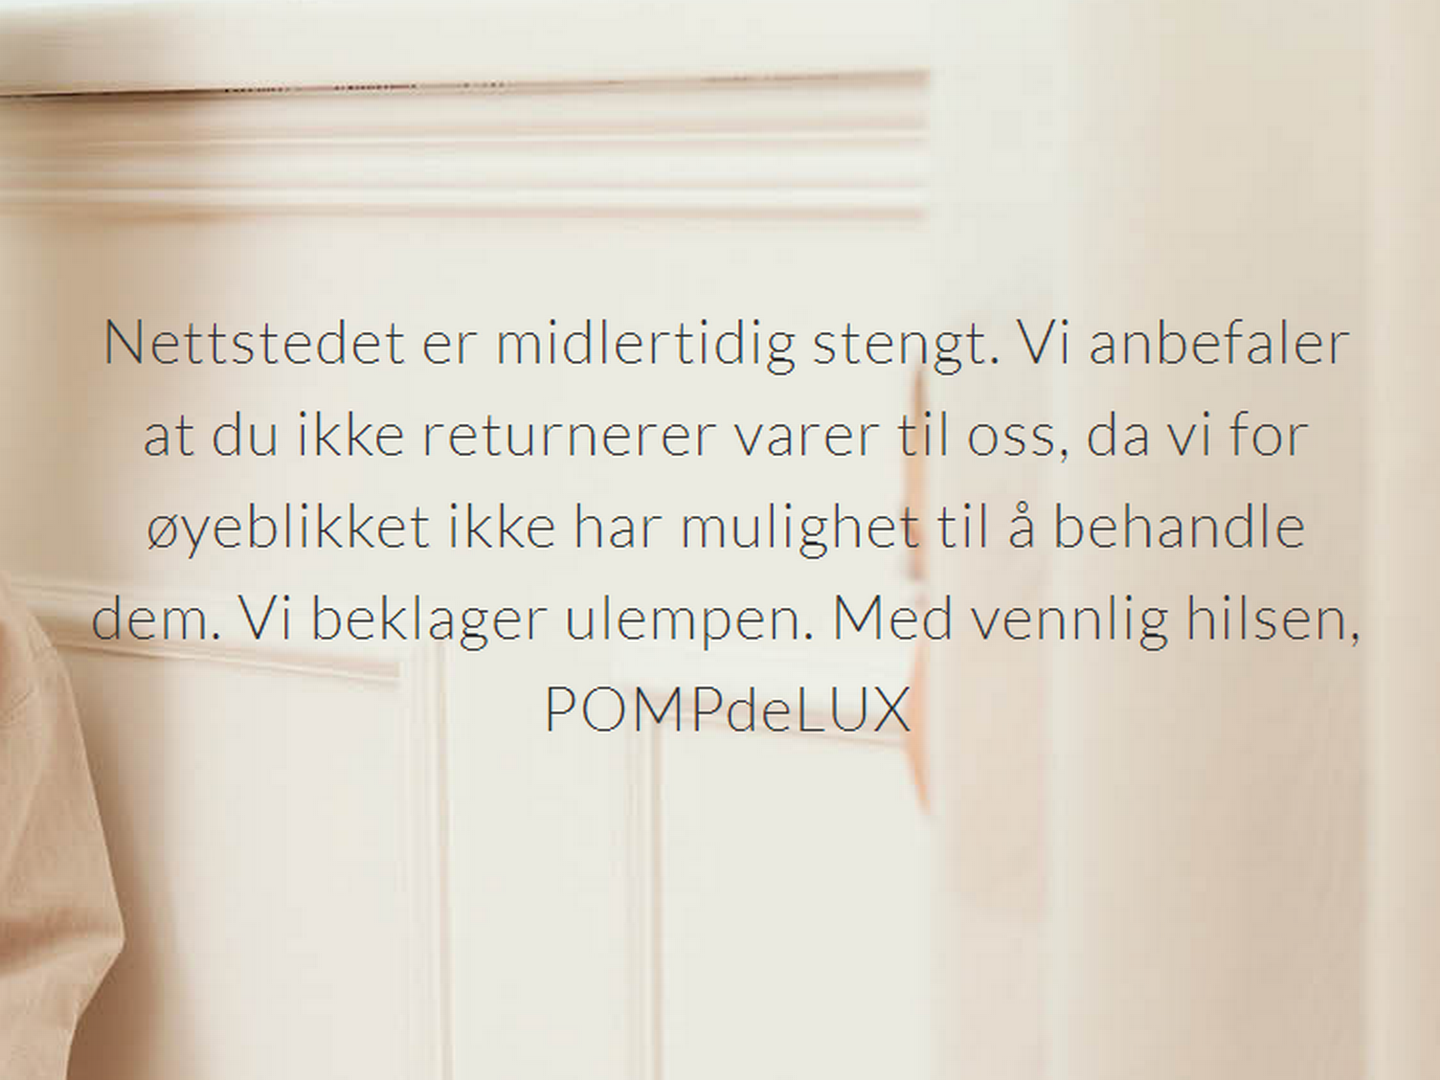 Det danske klesmerket Pompdelux har midlertidig lagt ned driften. | Foto: Skjermdump Pompdelux